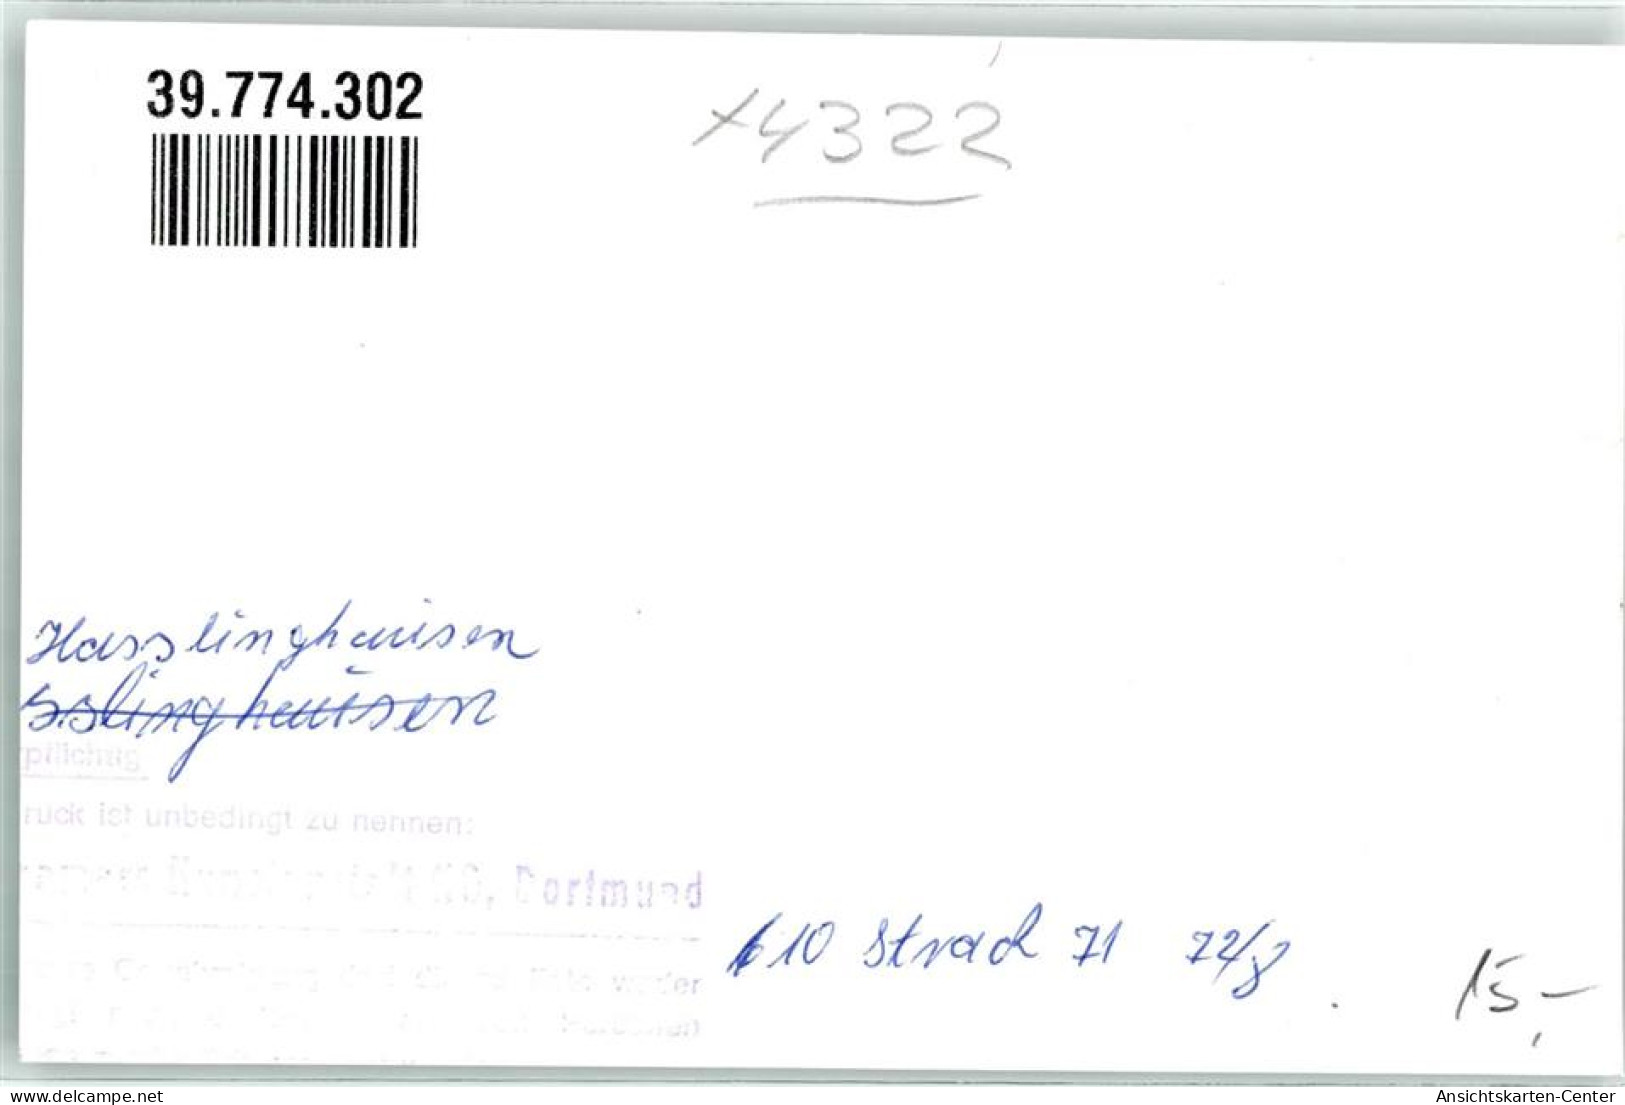 39774302 - Hasslinghausen - Sprockhövel